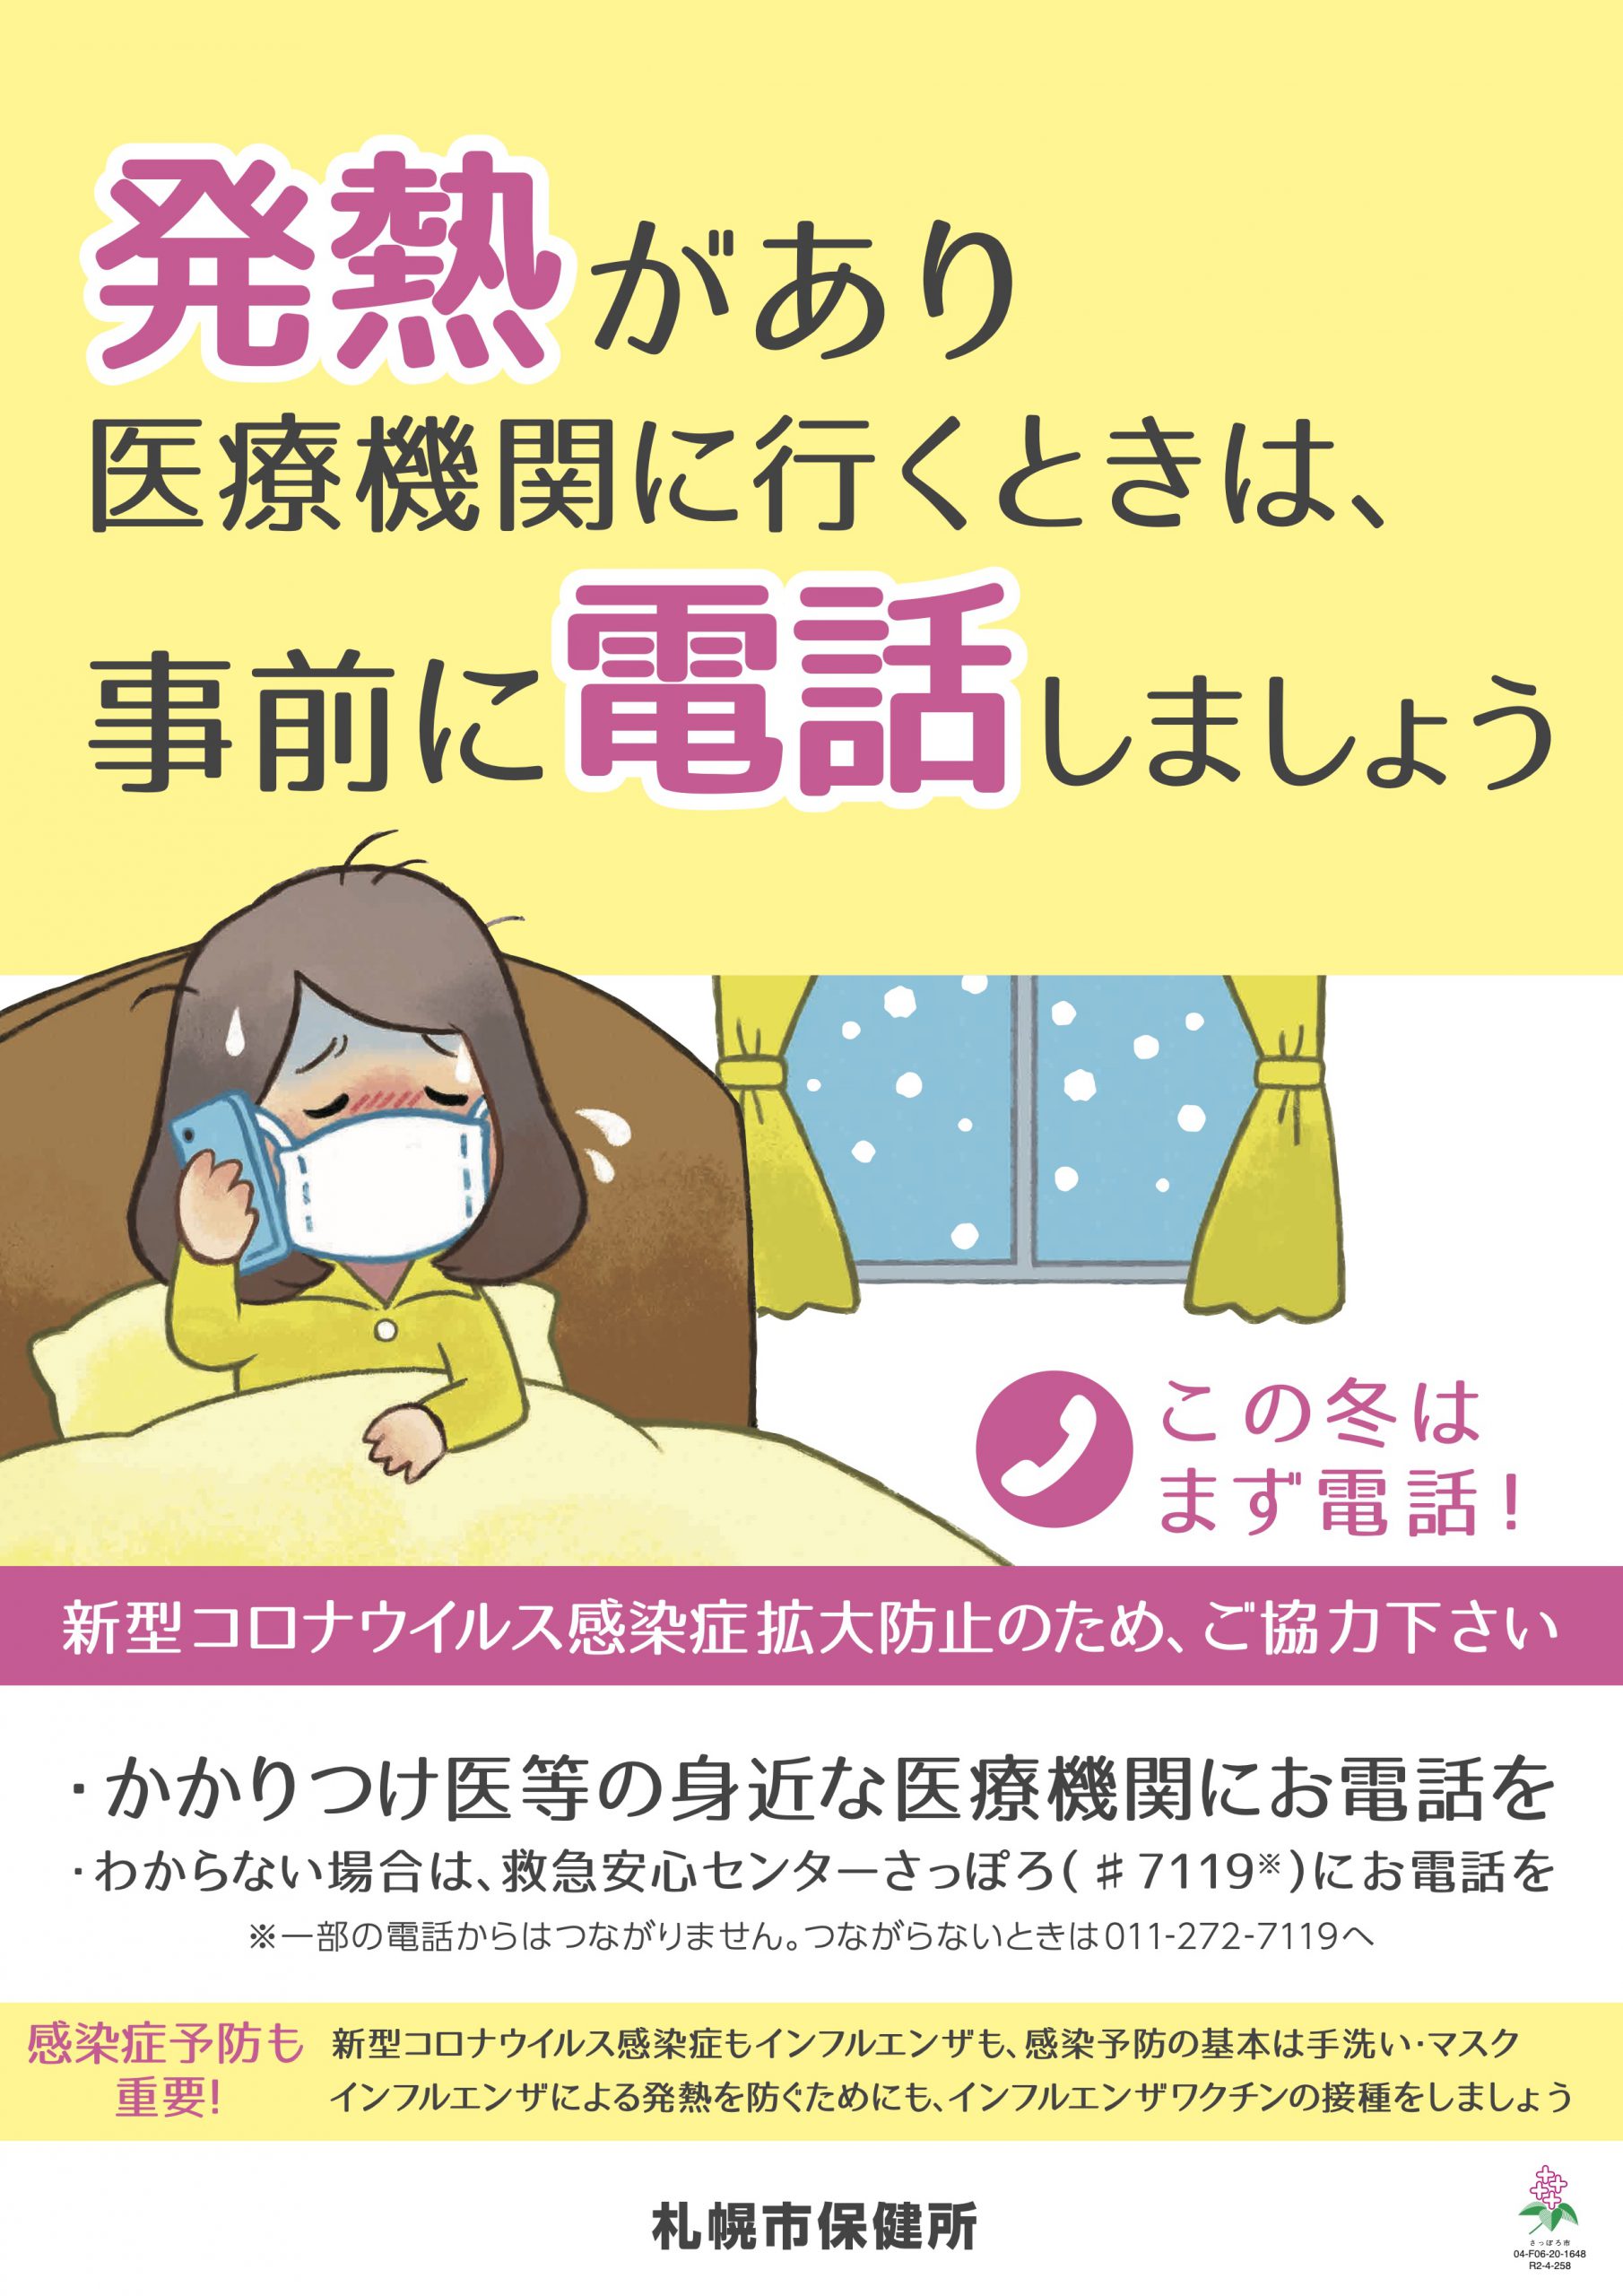 厚別ひばりクリニックは北海道より、発熱者等診療・検査医療機関に指定されております